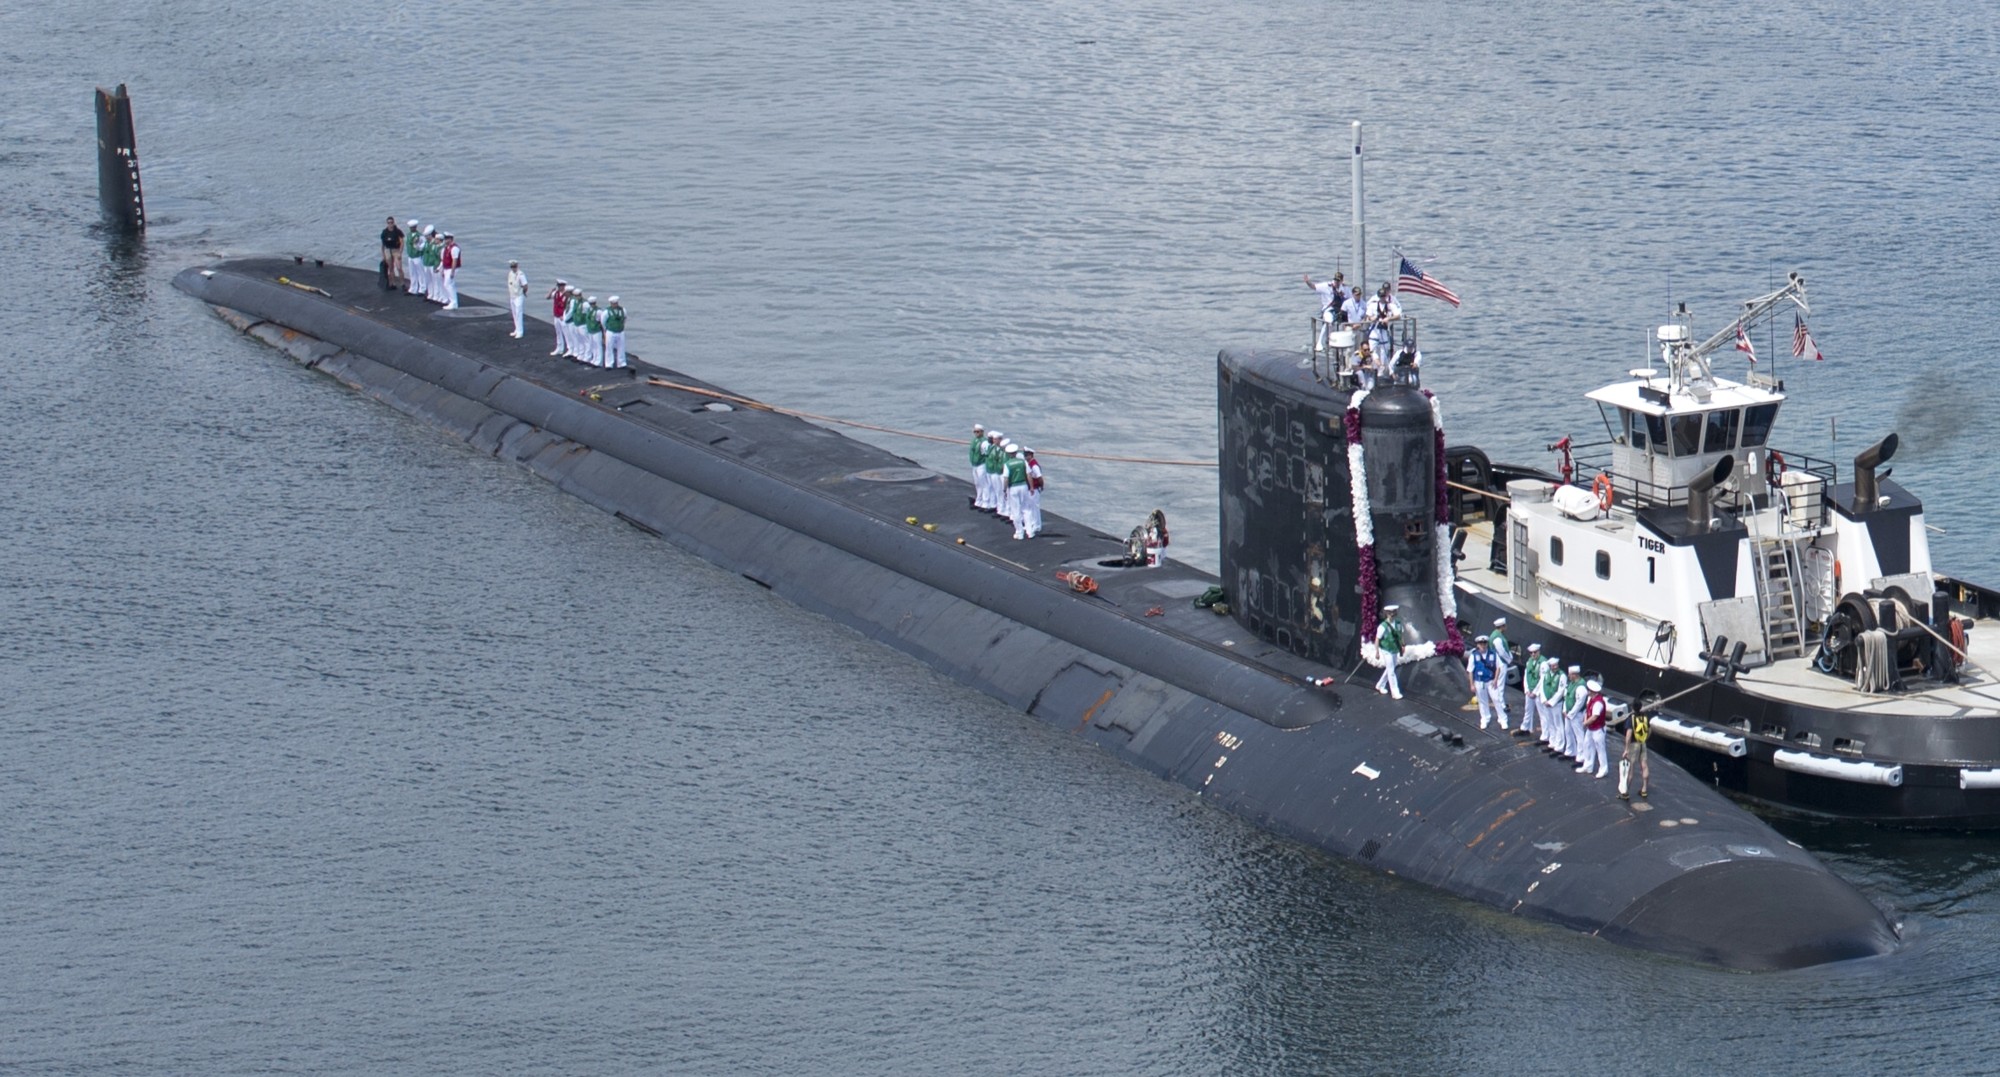 ssn-782 uss mississippi virginia class attack submarine us navy 42 pearl harbor hickam hawaii